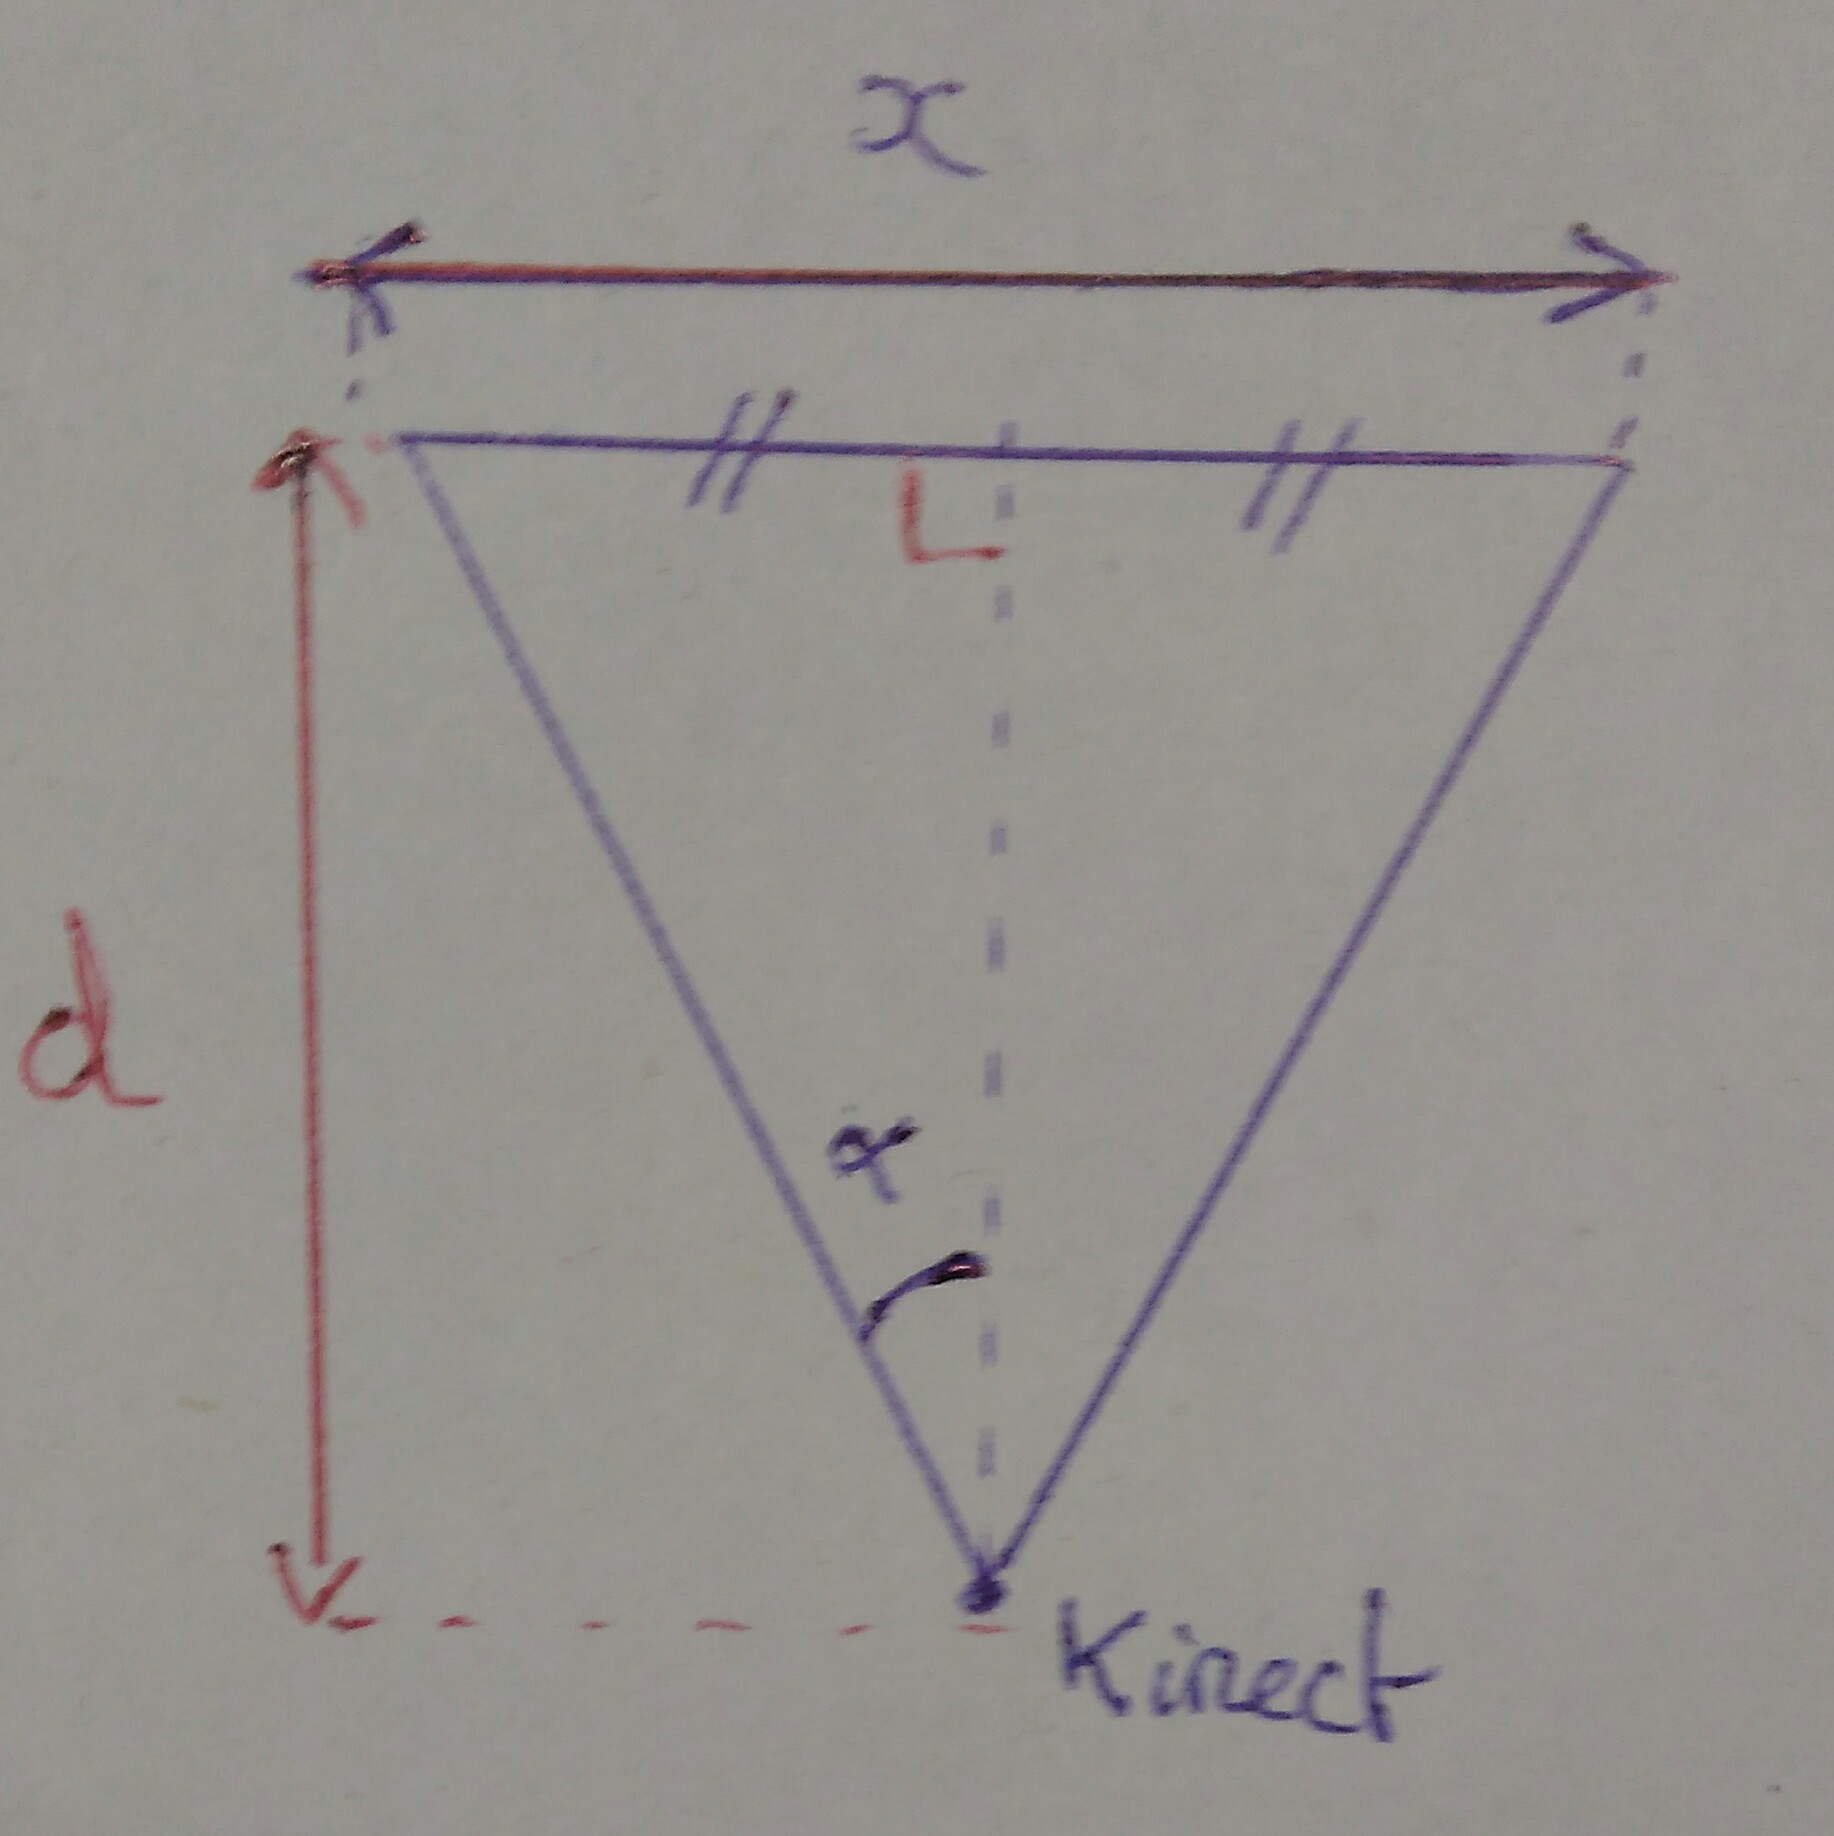 Positionnement kinect1.jpg